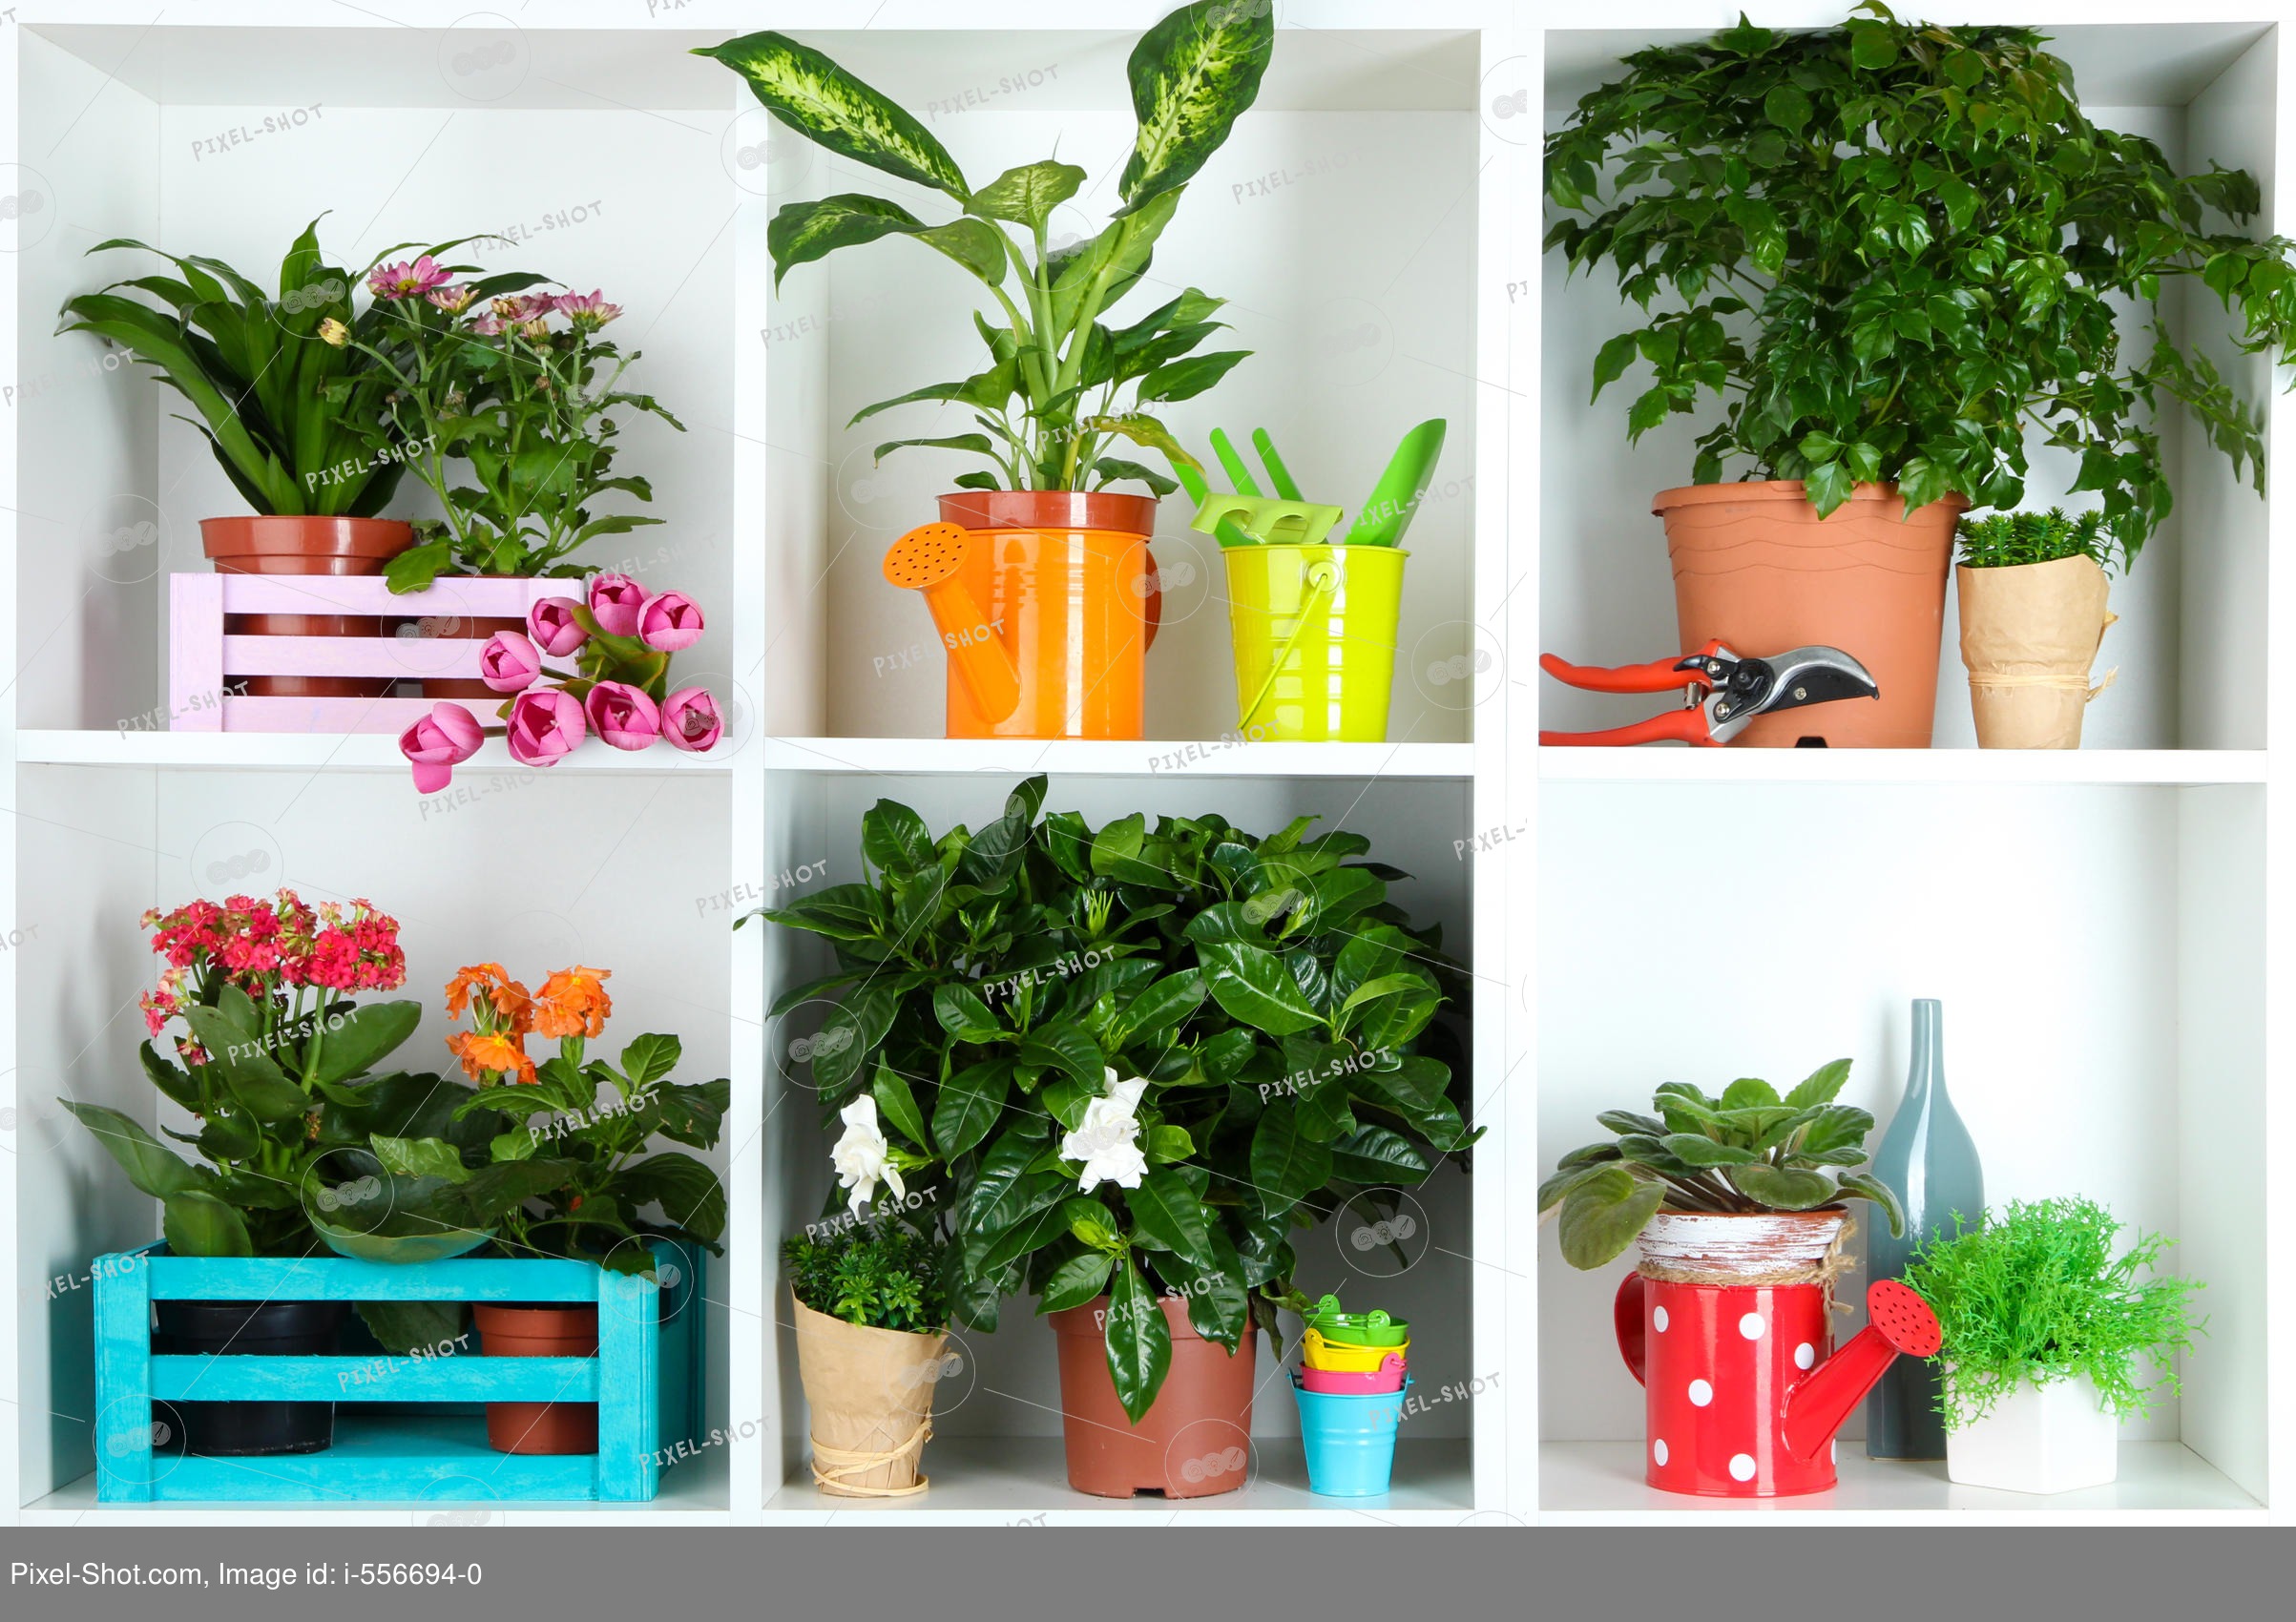 Название лучшие комнатные растения для дома: самые полезные для квартиры, свойства комнатных растений, какие цветы нужно держать дома